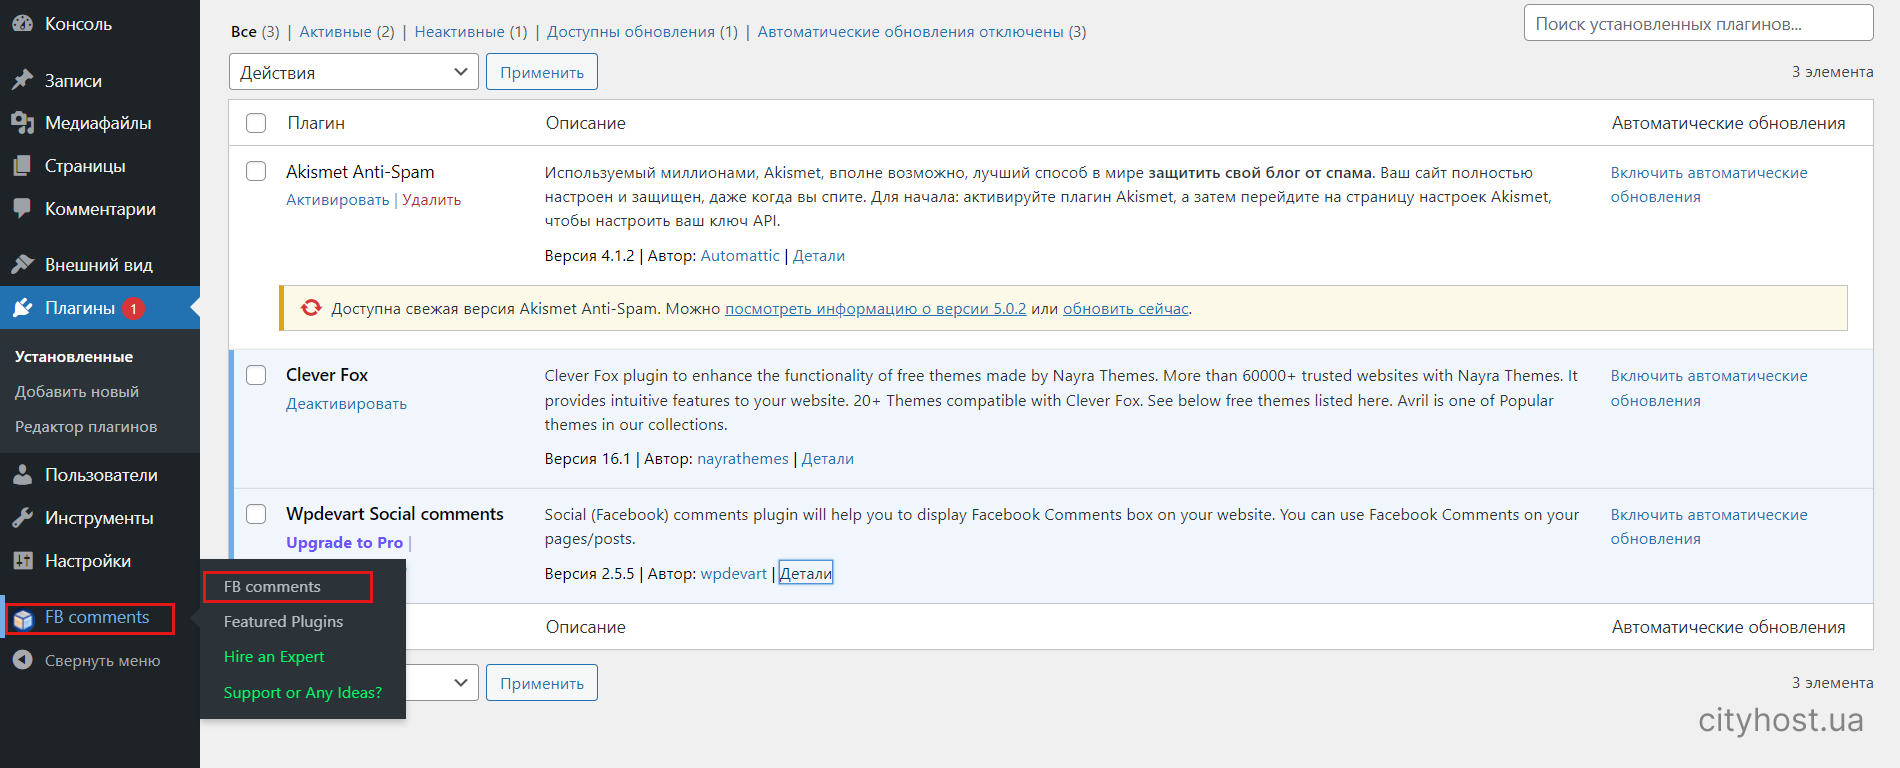 Налаштування плагіна для коментарів у Wordpress